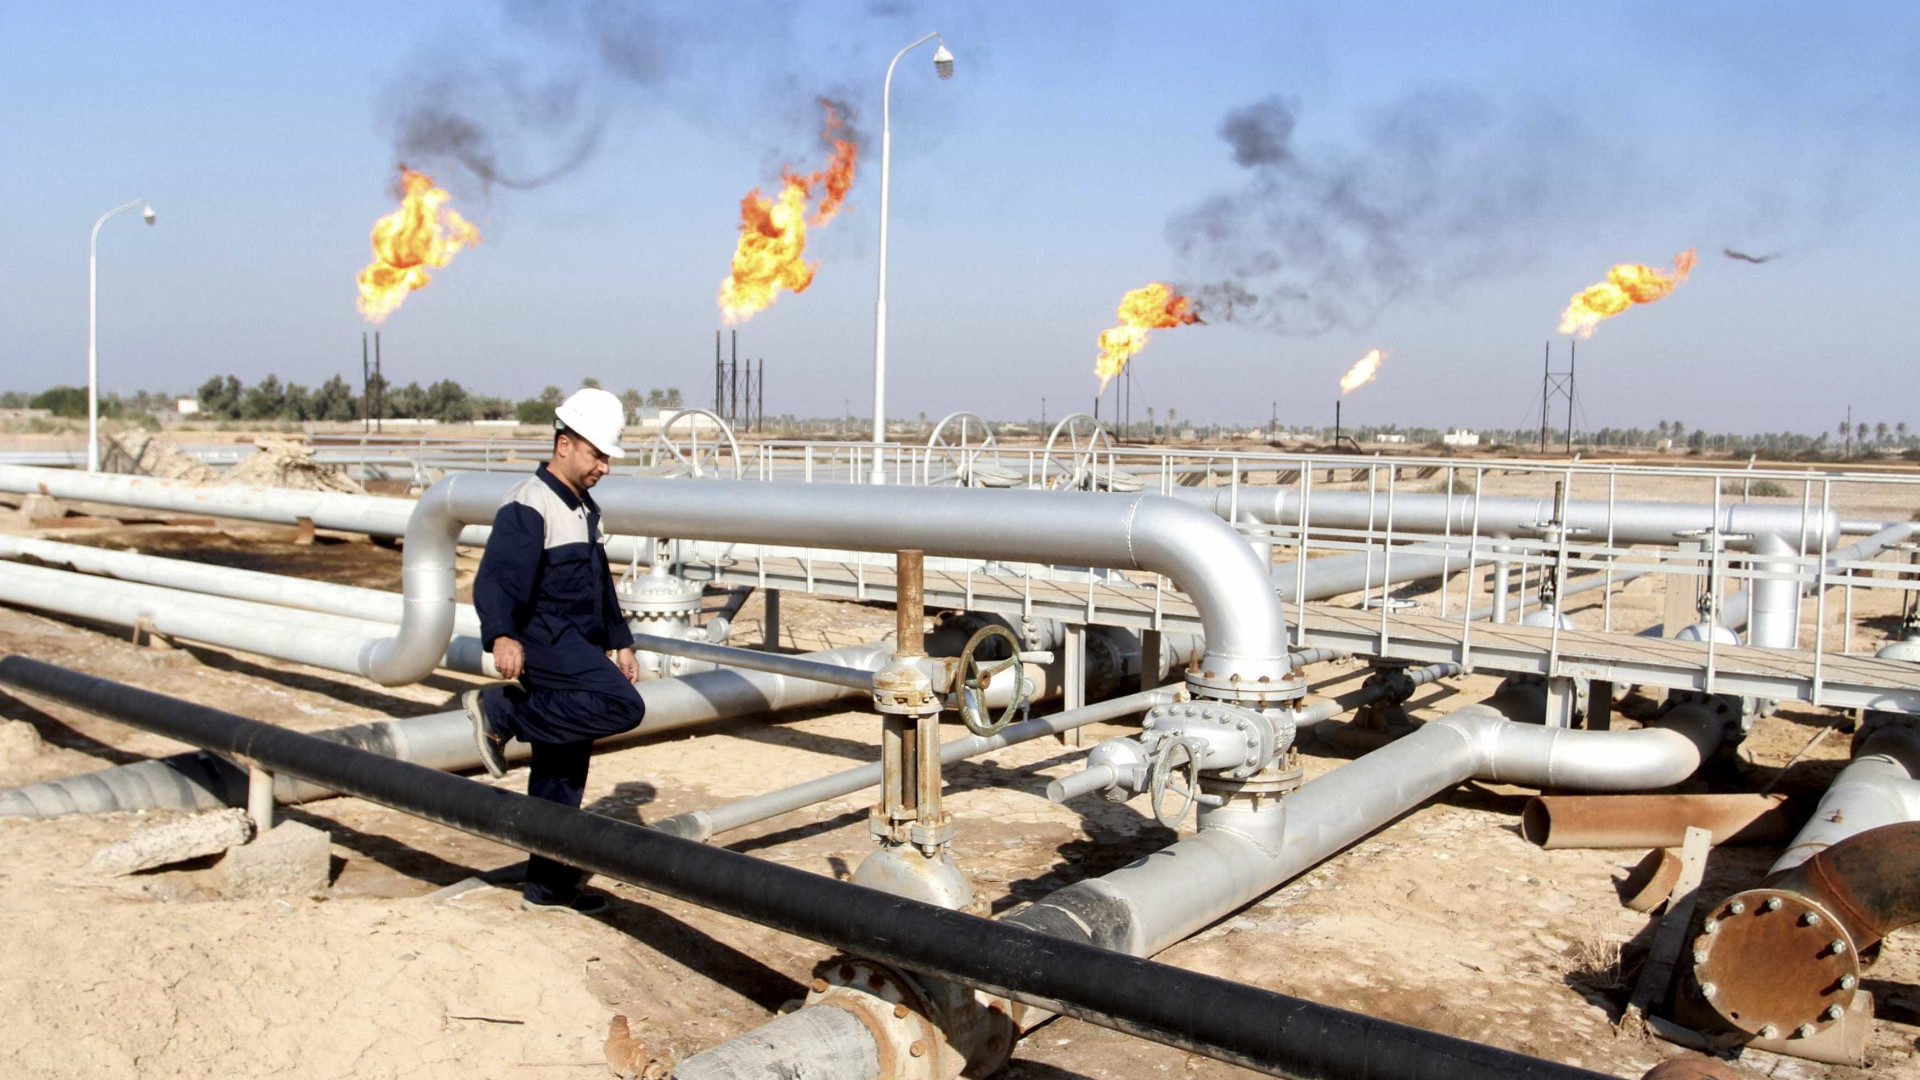 Iraque reduziu produção de
 petróleo em 180 mil barris por dia